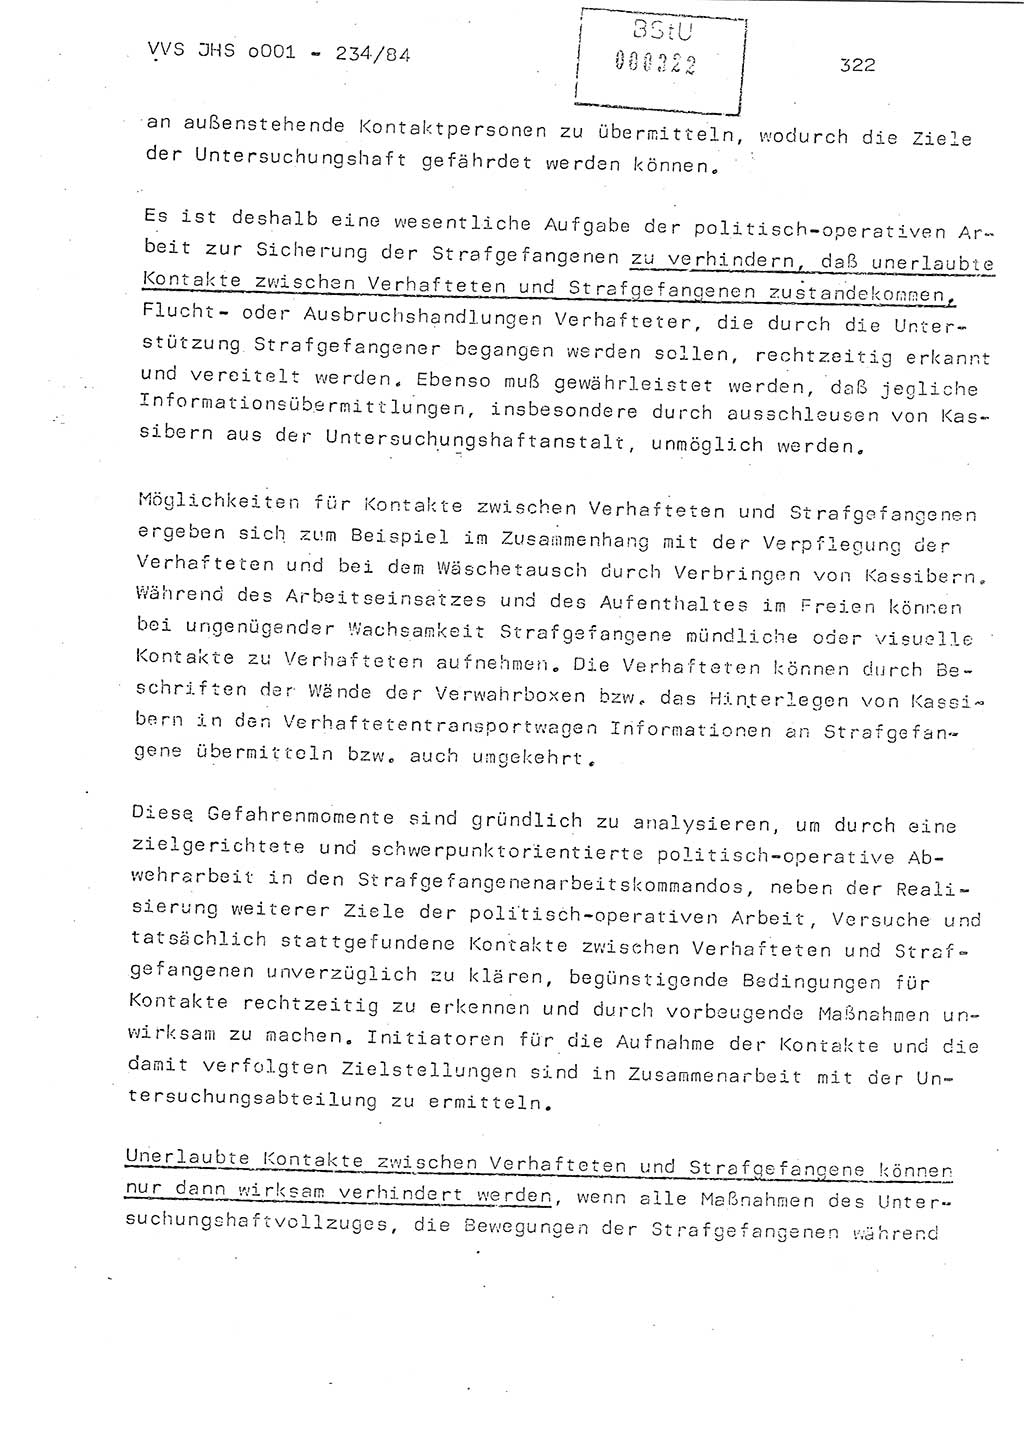 Dissertation Oberst Siegfried Rataizick (Abt. ⅩⅣ), Oberstleutnant Volkmar Heinz (Abt. ⅩⅣ), Oberstleutnant Werner Stein (HA Ⅸ), Hauptmann Heinz Conrad (JHS), Ministerium für Staatssicherheit (MfS) [Deutsche Demokratische Republik (DDR)], Juristische Hochschule (JHS), Vertrauliche Verschlußsache (VVS) o001-234/84, Potsdam 1984, Seite 322 (Diss. MfS DDR JHS VVS o001-234/84 1984, S. 322)